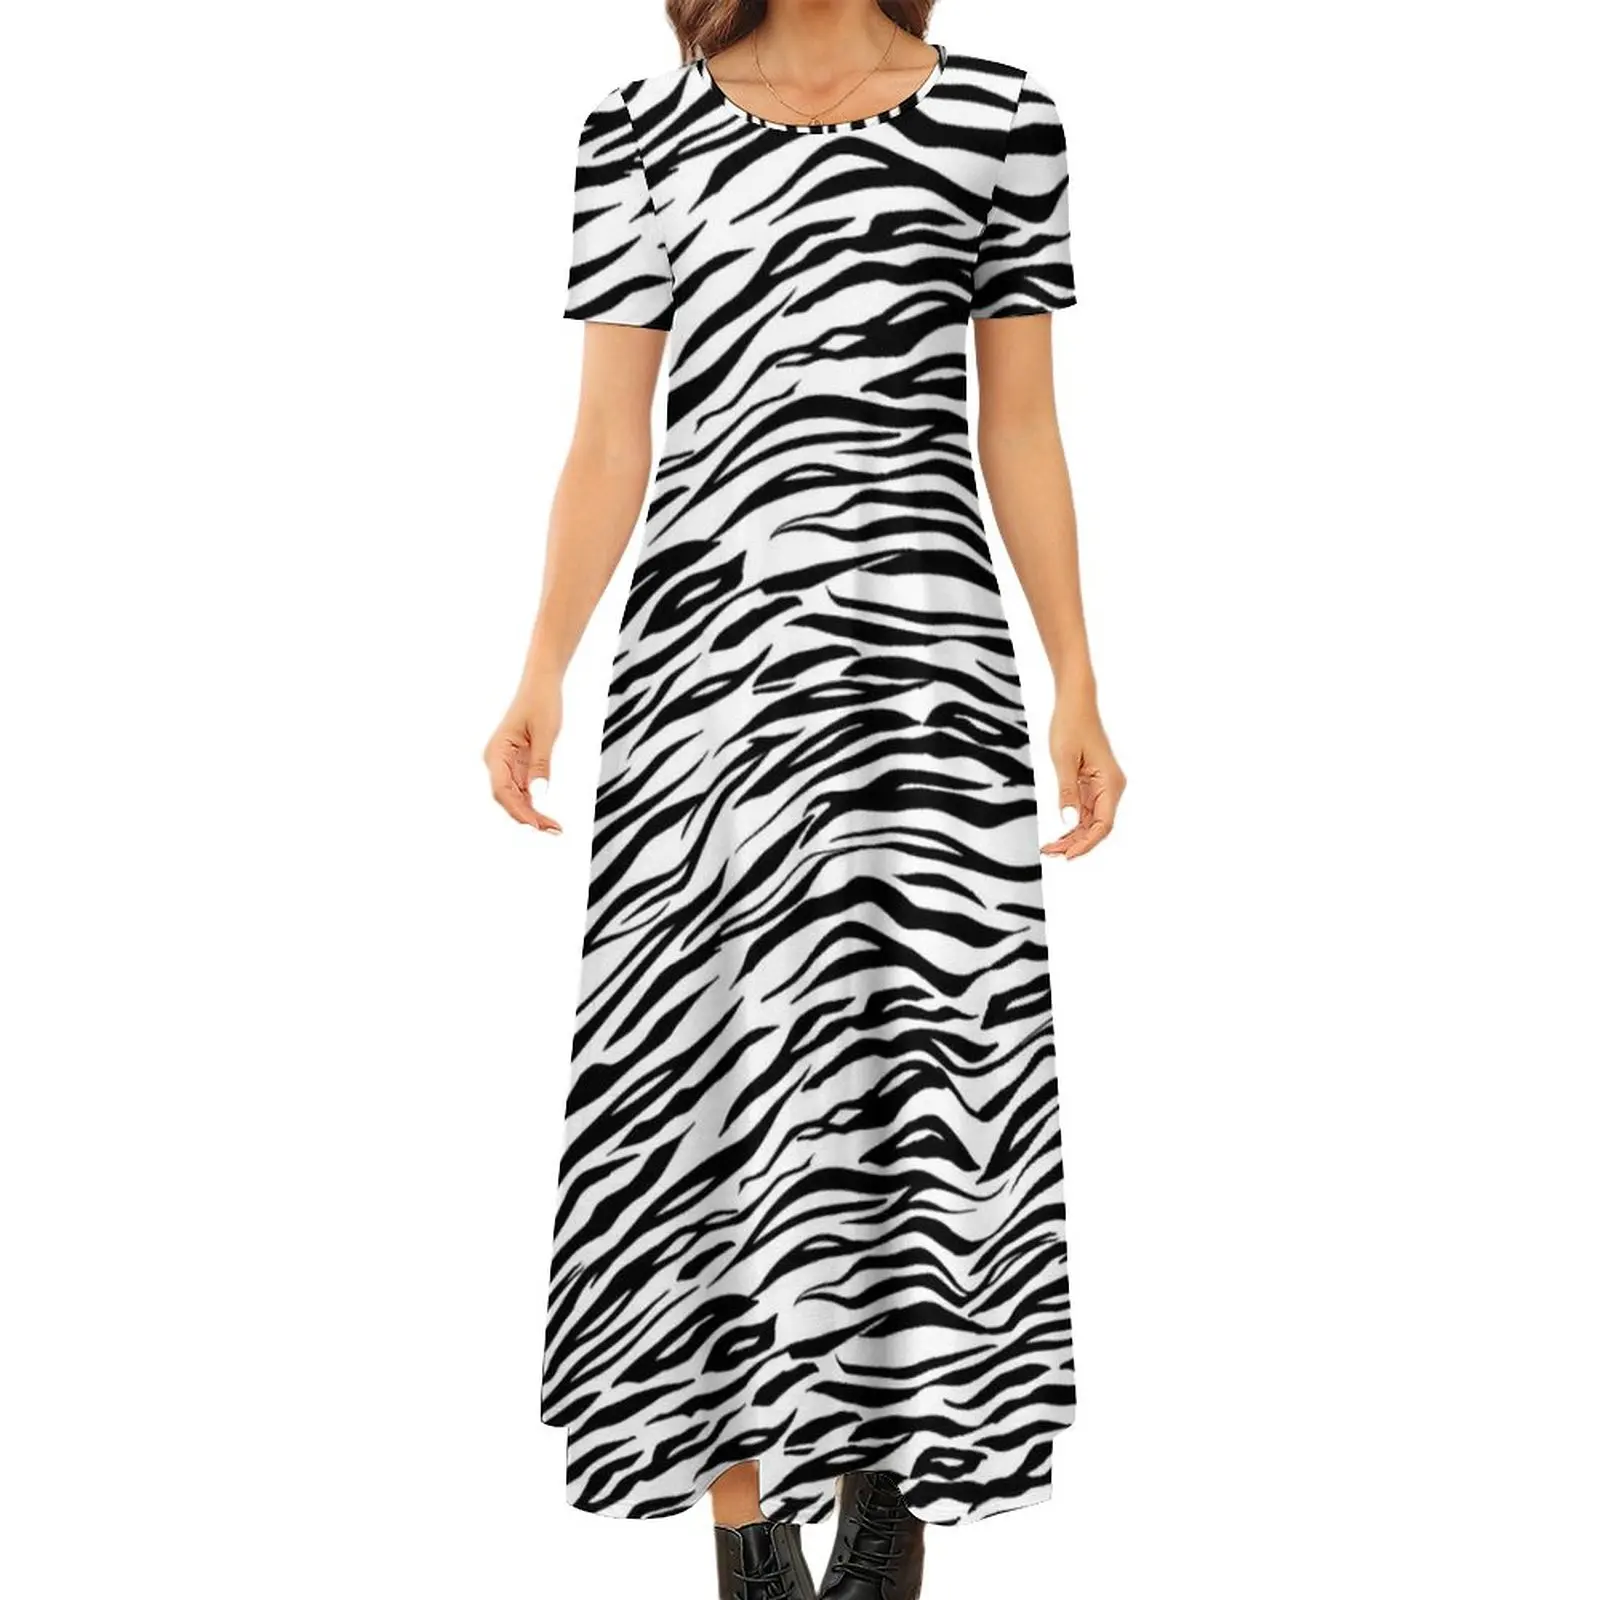 

Черно-белое платье-Зебра, современное Макси-Платье с животным принтом, женские длинные пляжные платья большого размера в уличном стиле Бохо с коротким рукавом